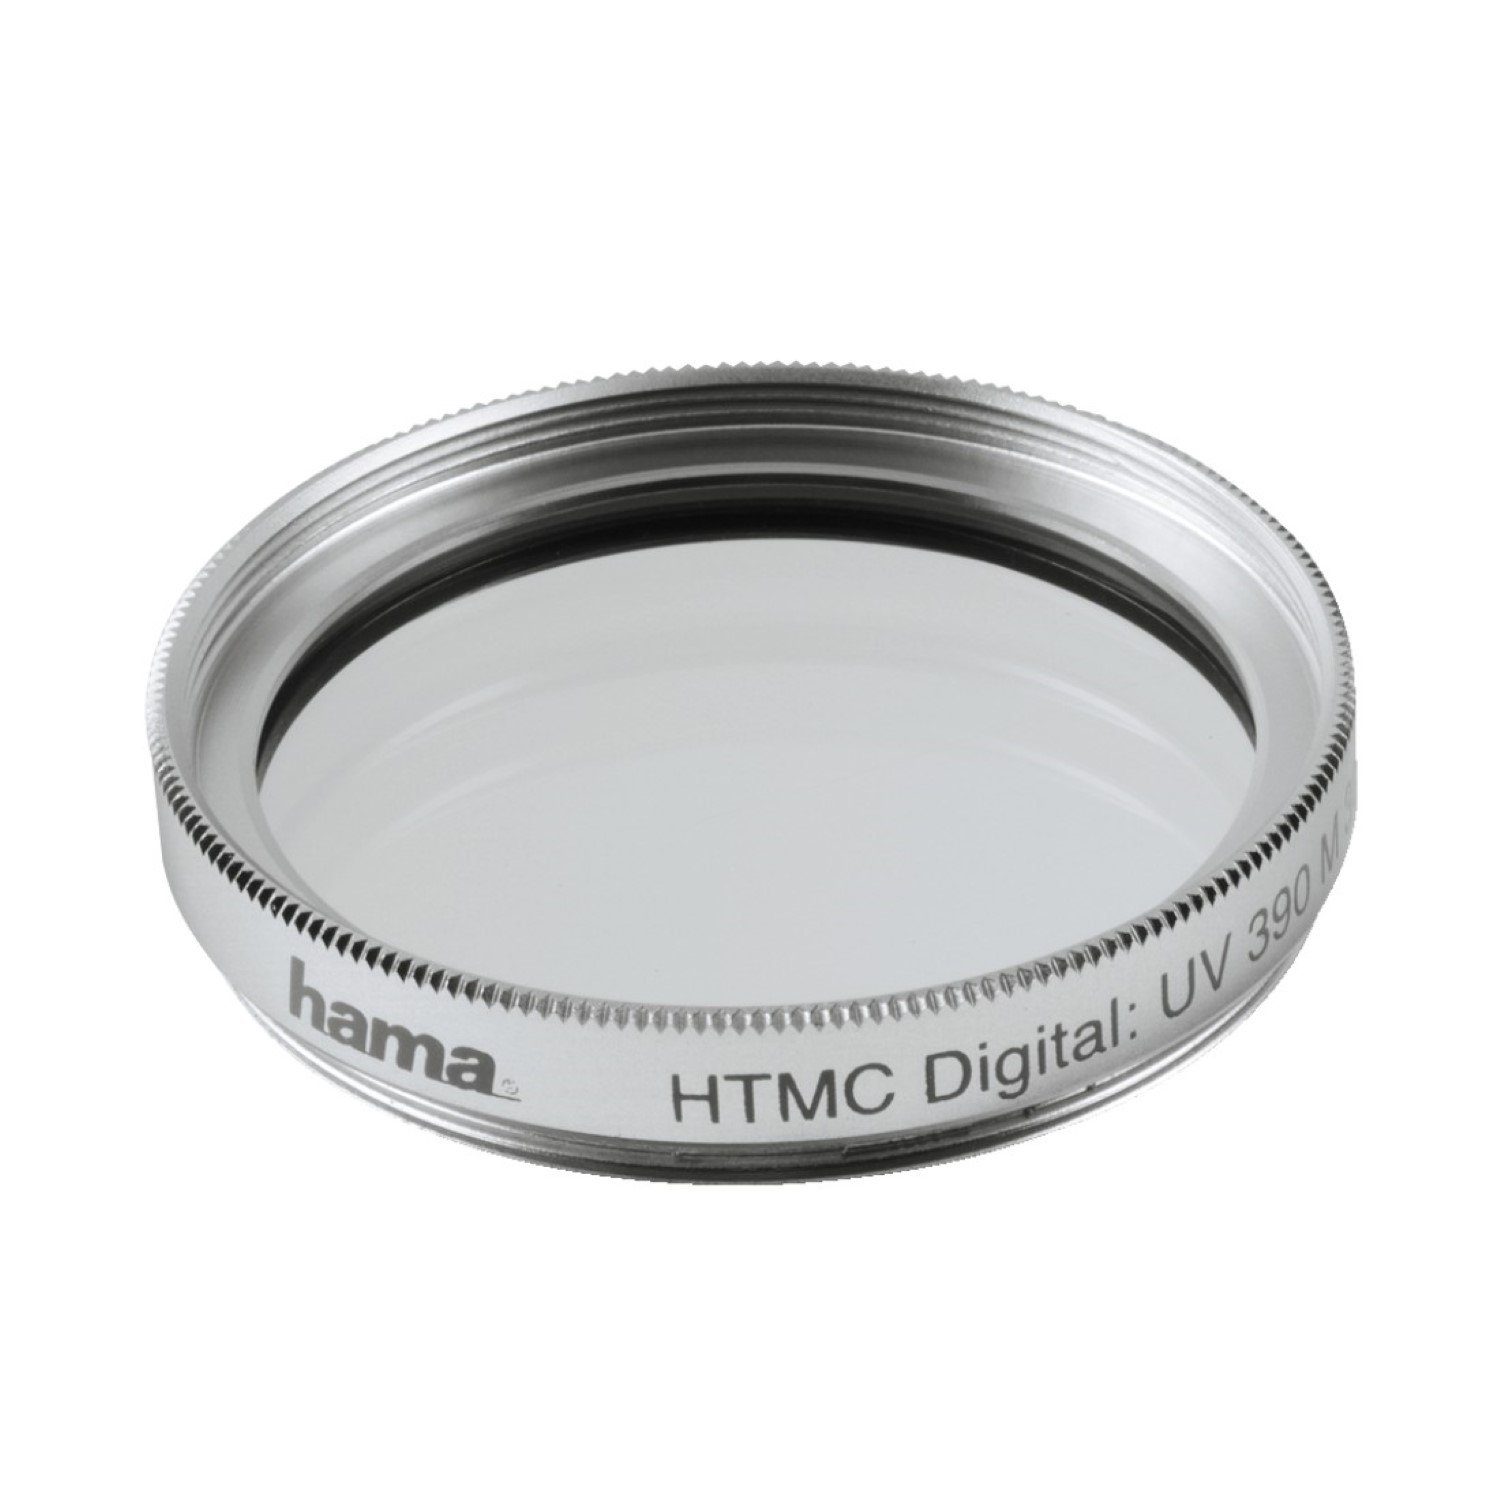 Hama UV-Filter 25mm HTMC vergütet Silber Objektivzubehör (Speer-Filter UV-Filter Kamera Objektiv DSLR SLR Systemkamera Camcorder)